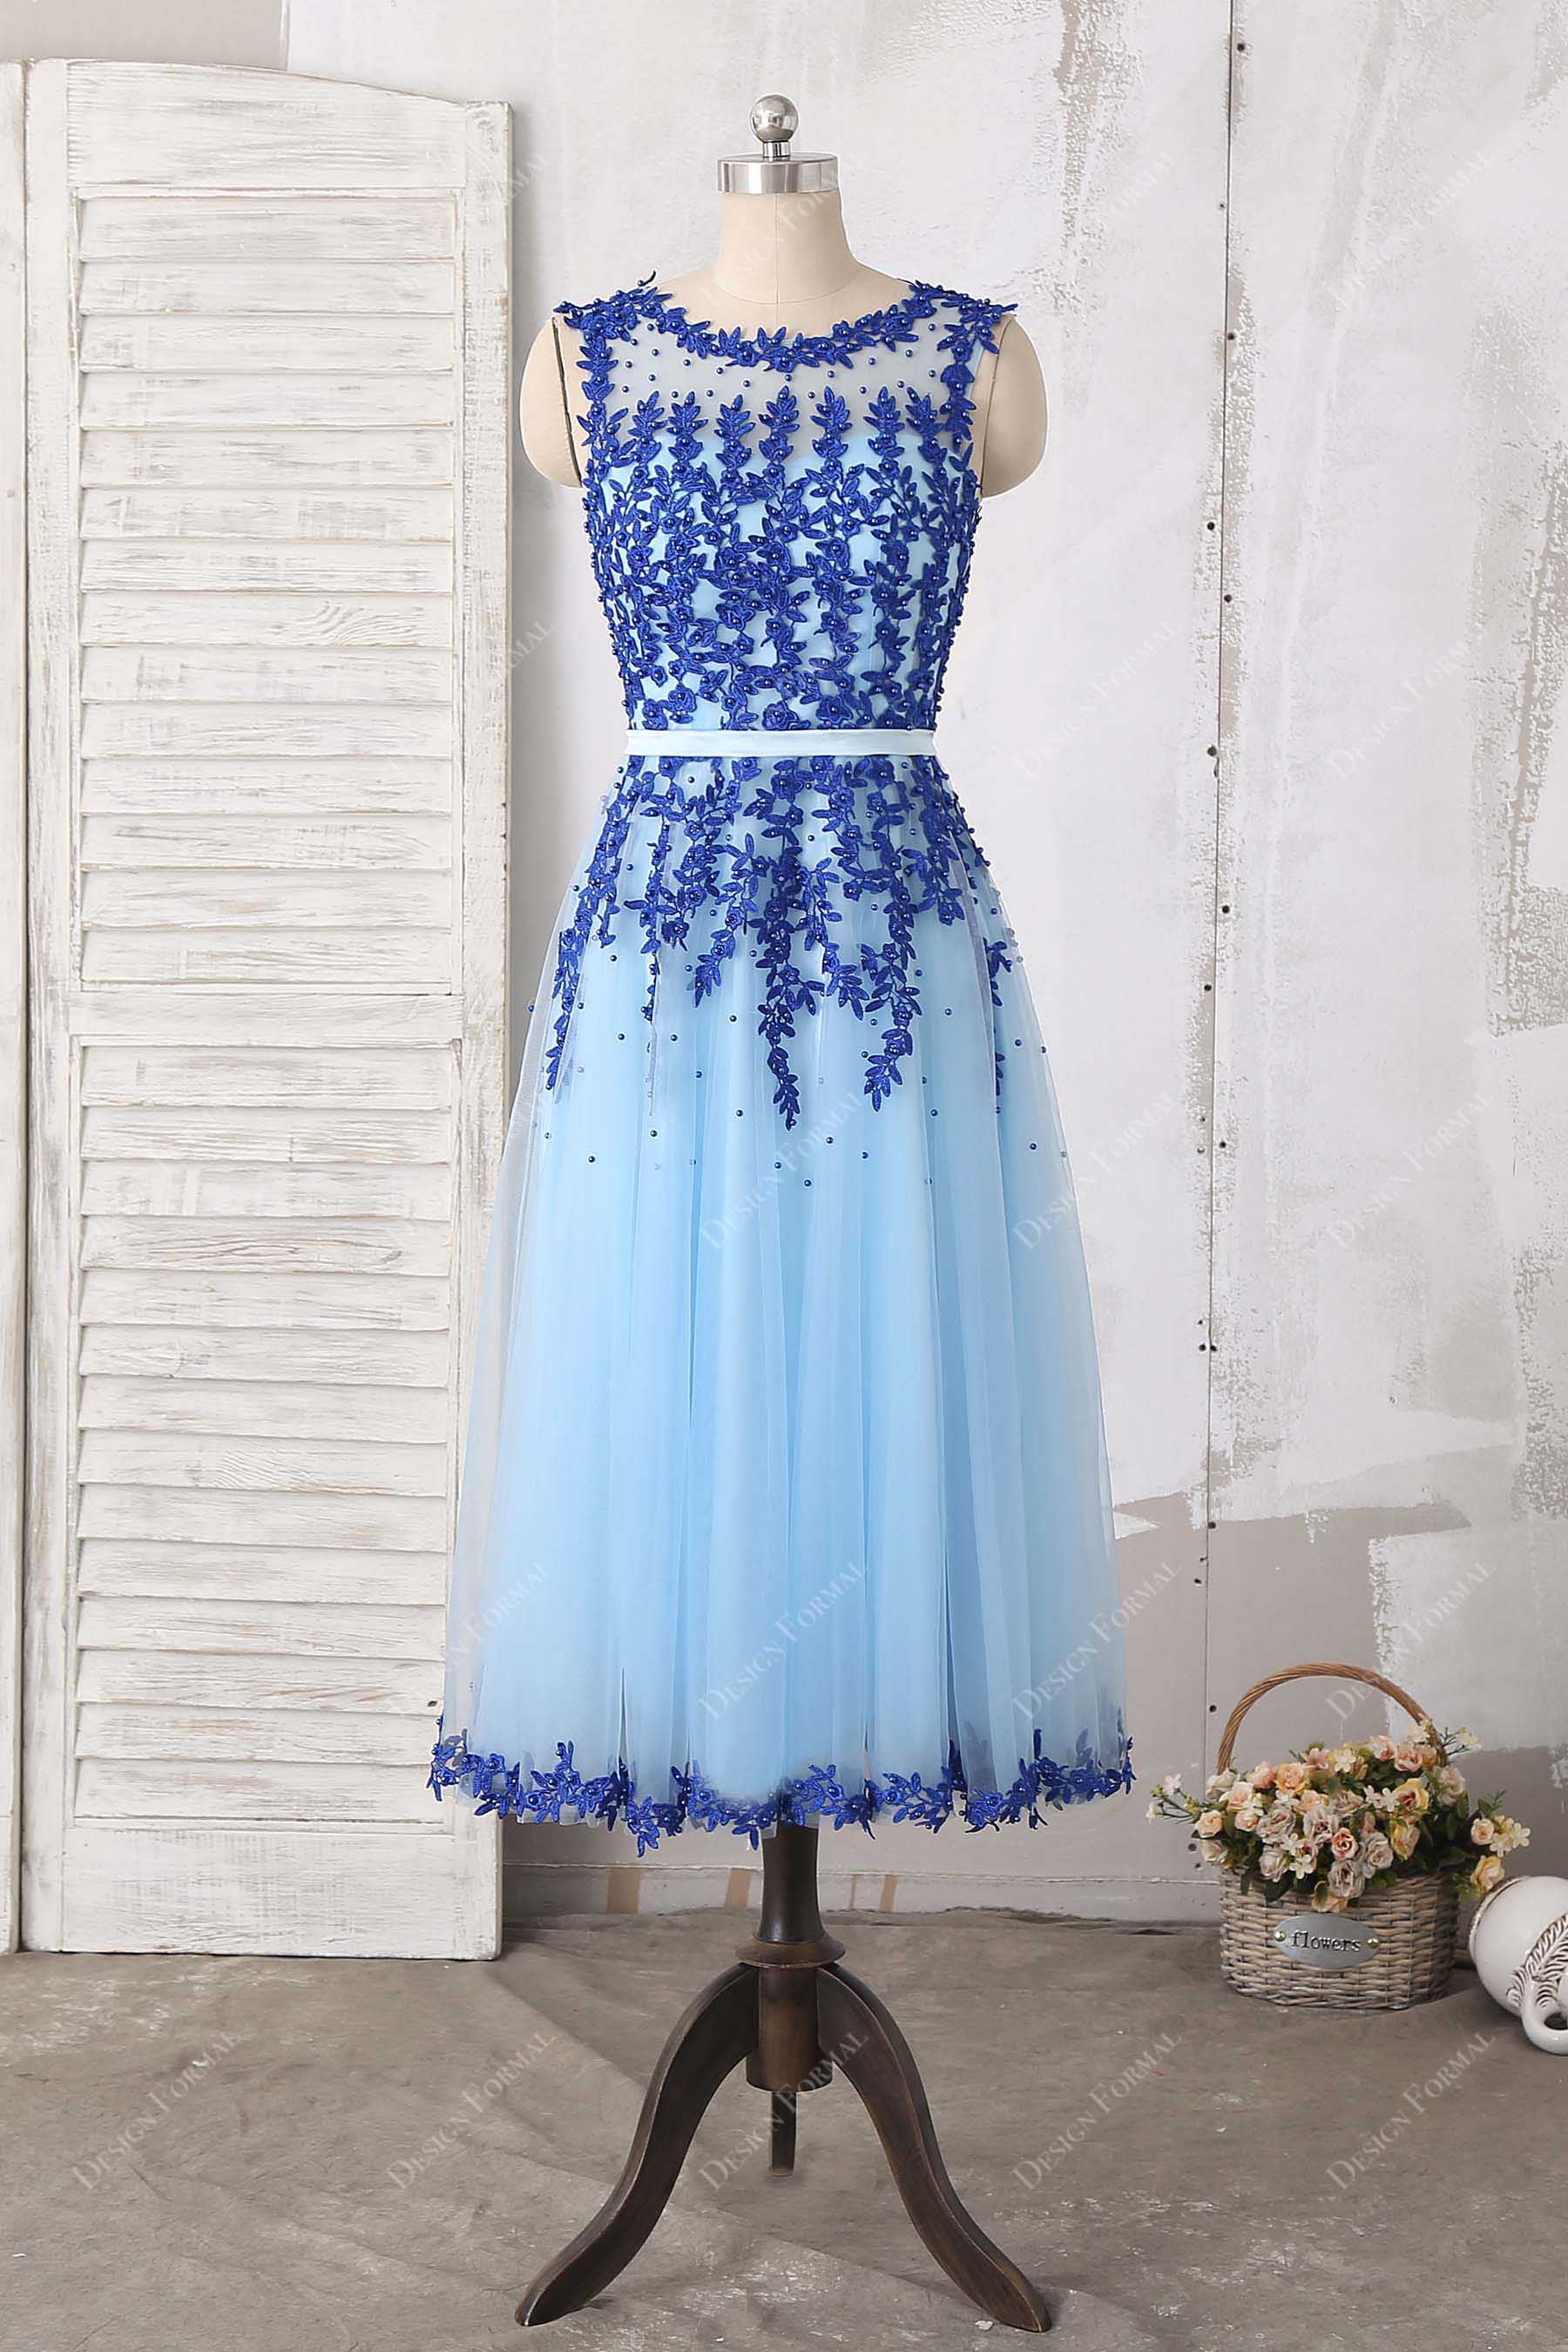 Blue Illusion Neck Lace Tea Length Cocktail Dress